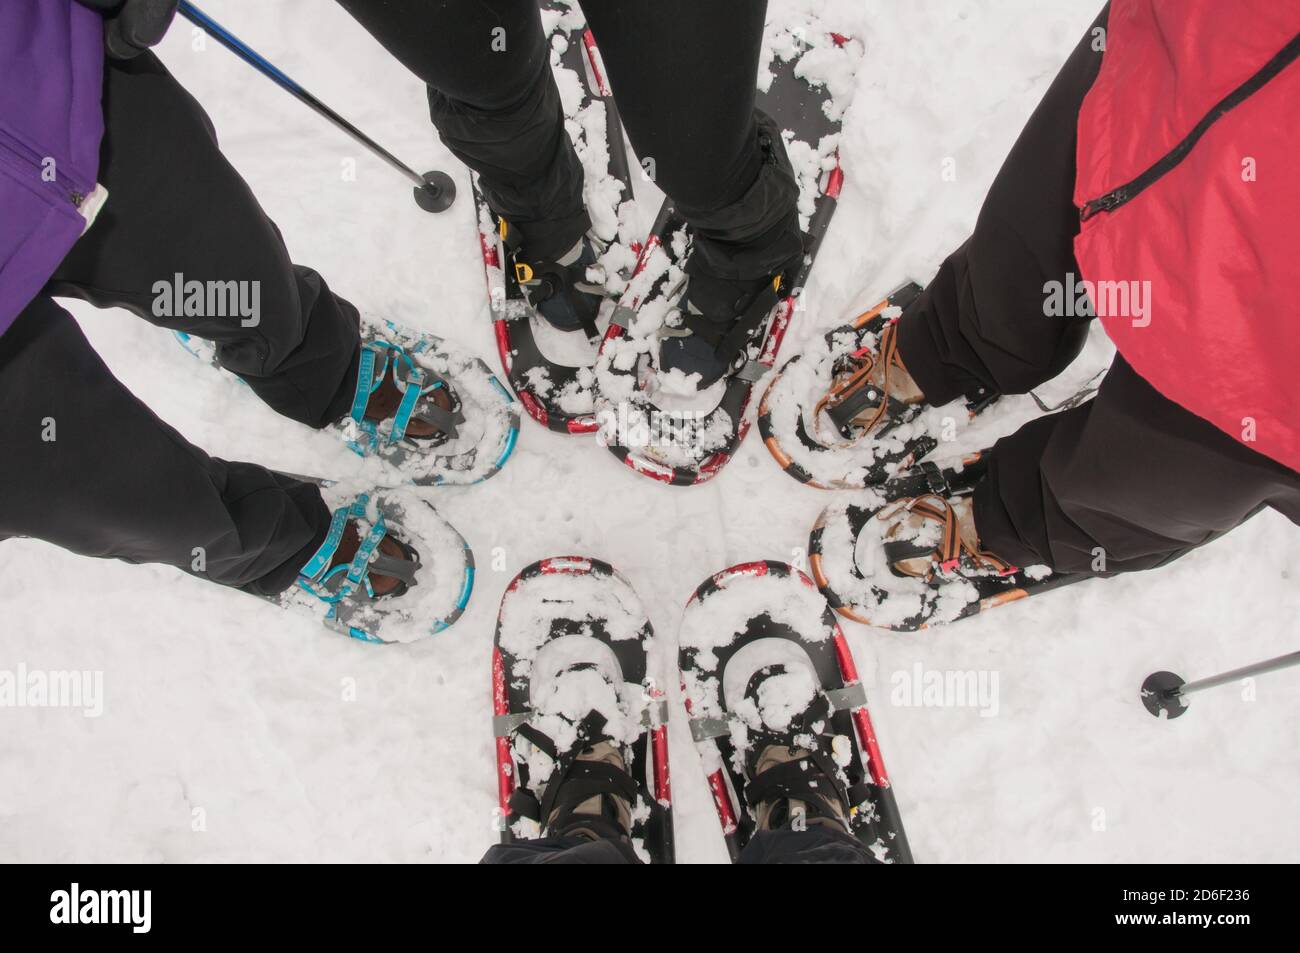 Cuatro personas de pie en la nieve con zapatos de nieve modernos y ligeros. Senderismo de invierno. Búsqueda recreativa. Foto de stock